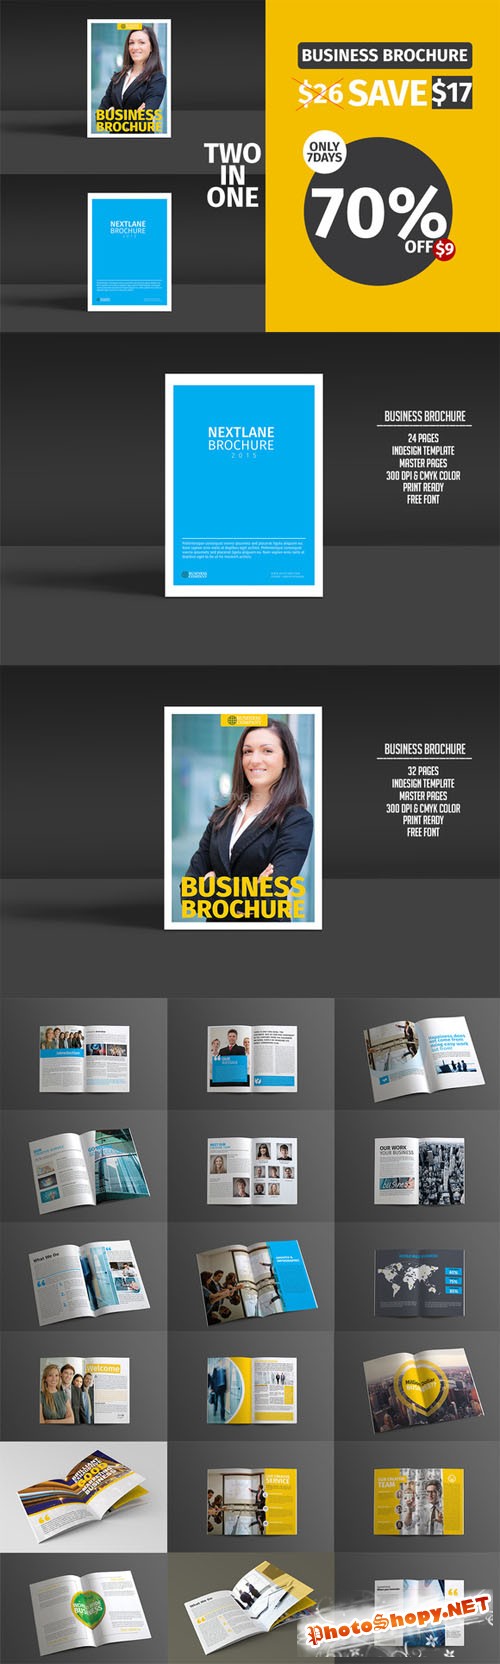 Business Brochure Bundle - CM 203405